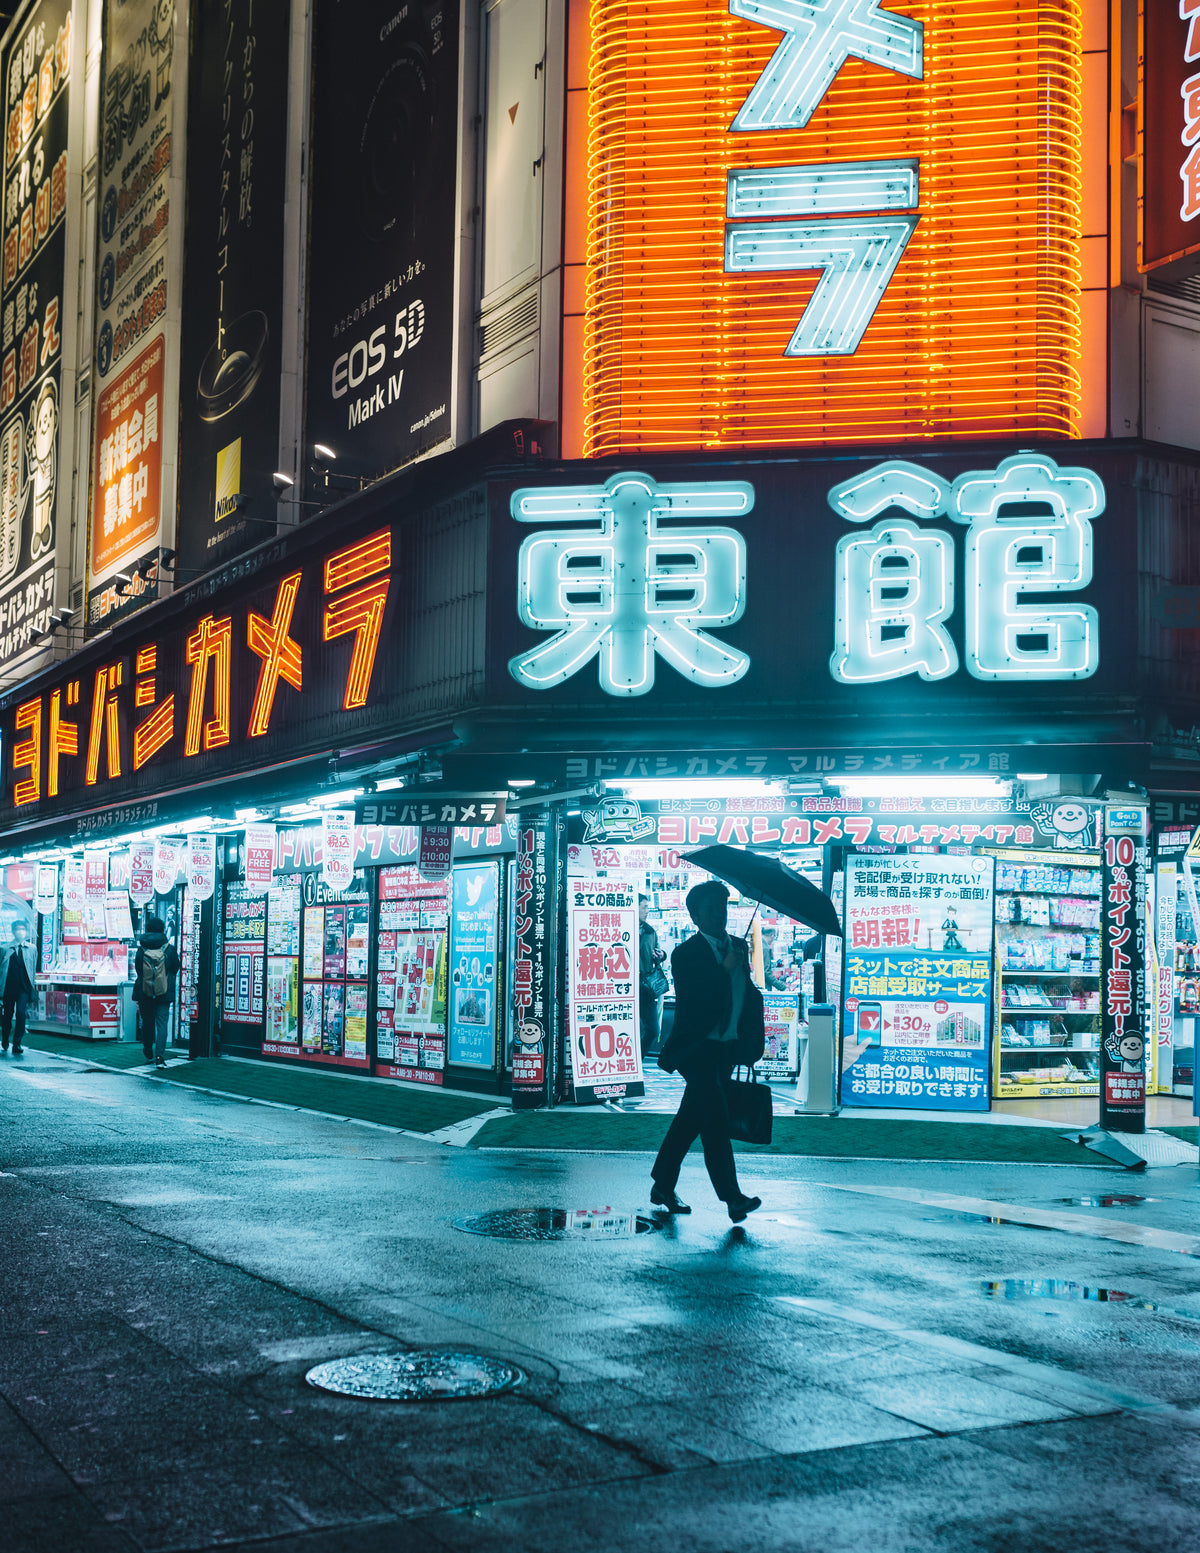 打着雨伞的男人被东京的霓虹挂毯框住了